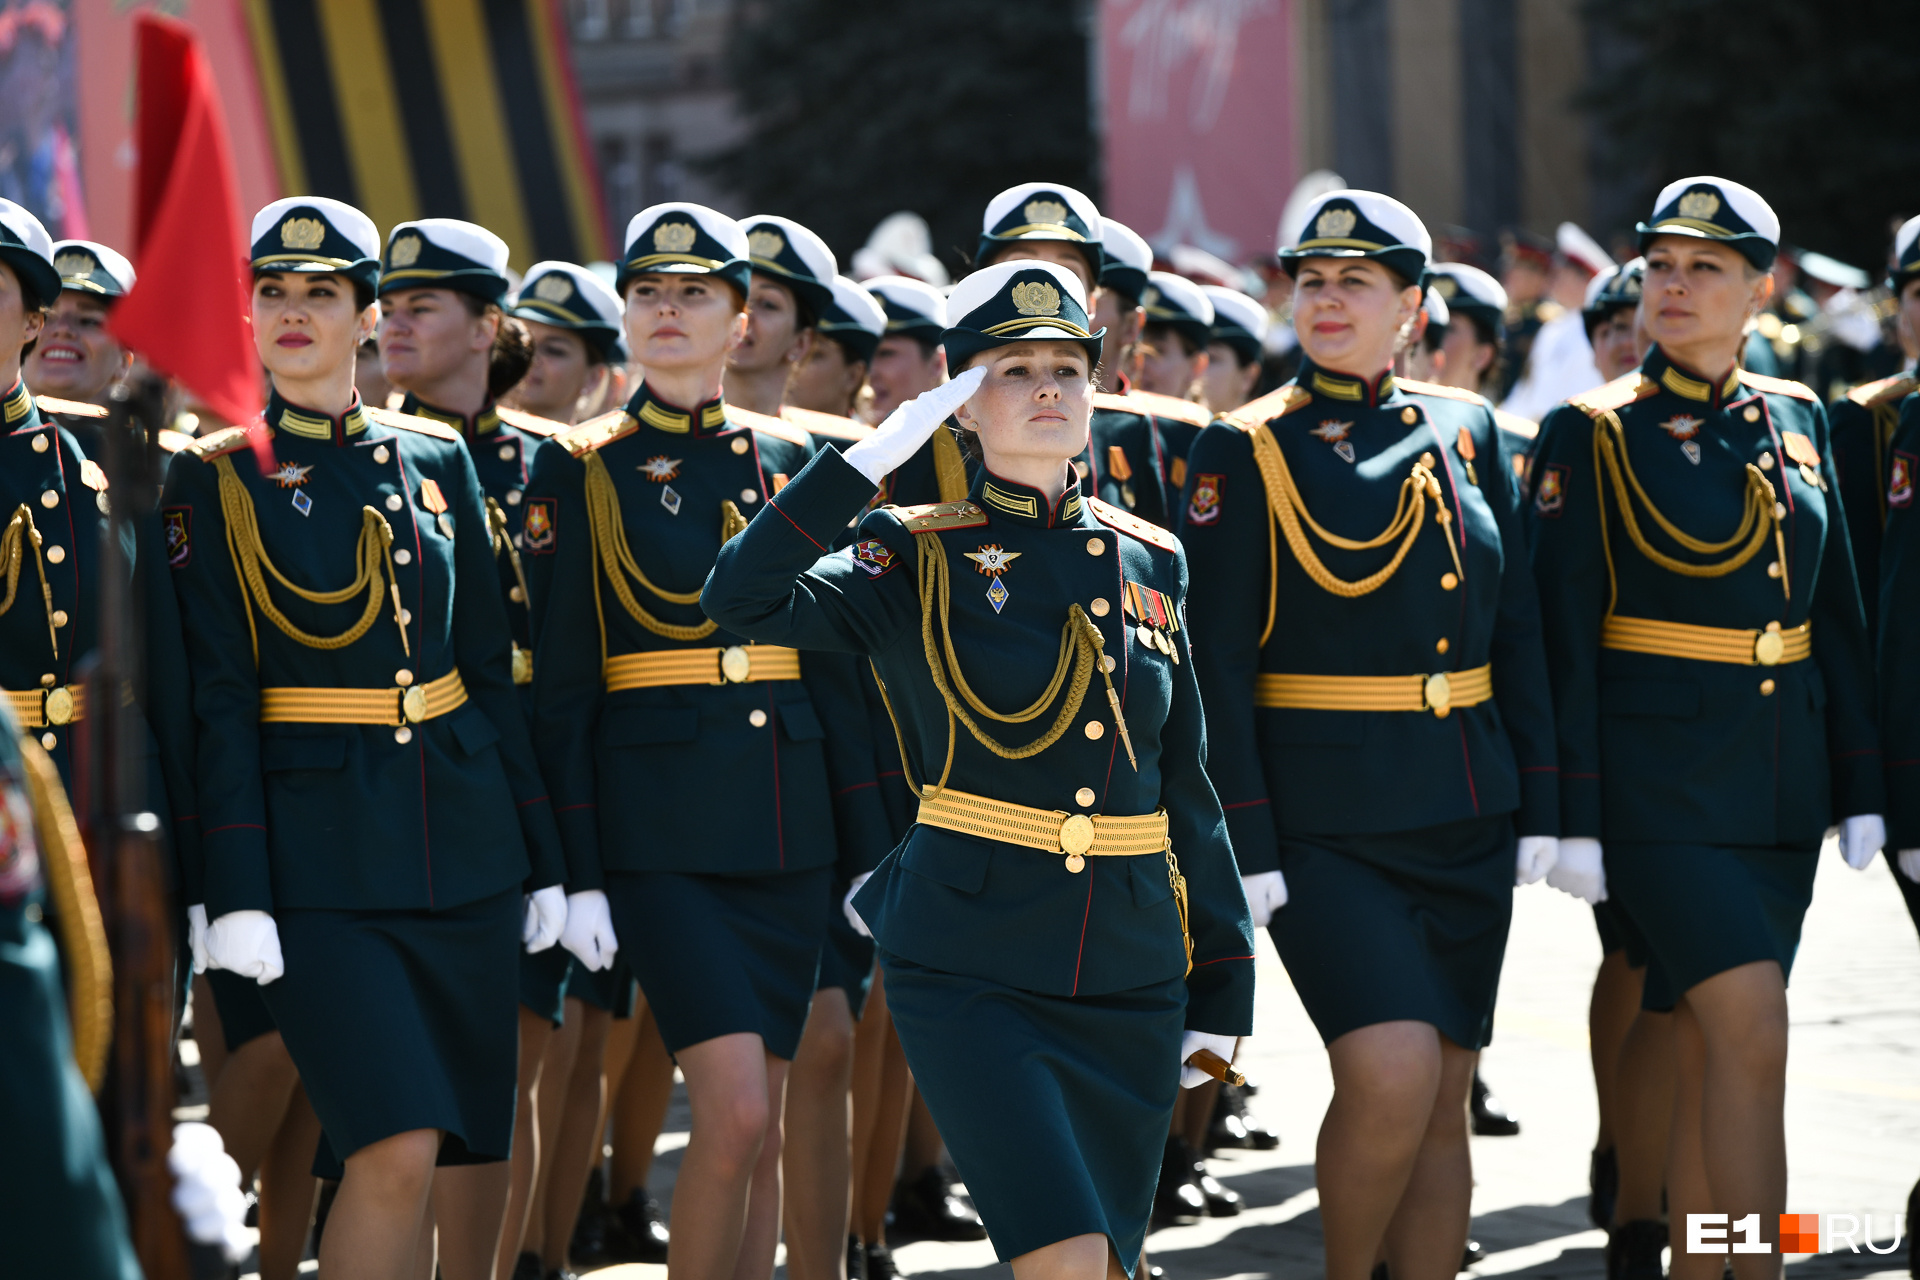 Сводный парадный расчет военнослужащих-женщин